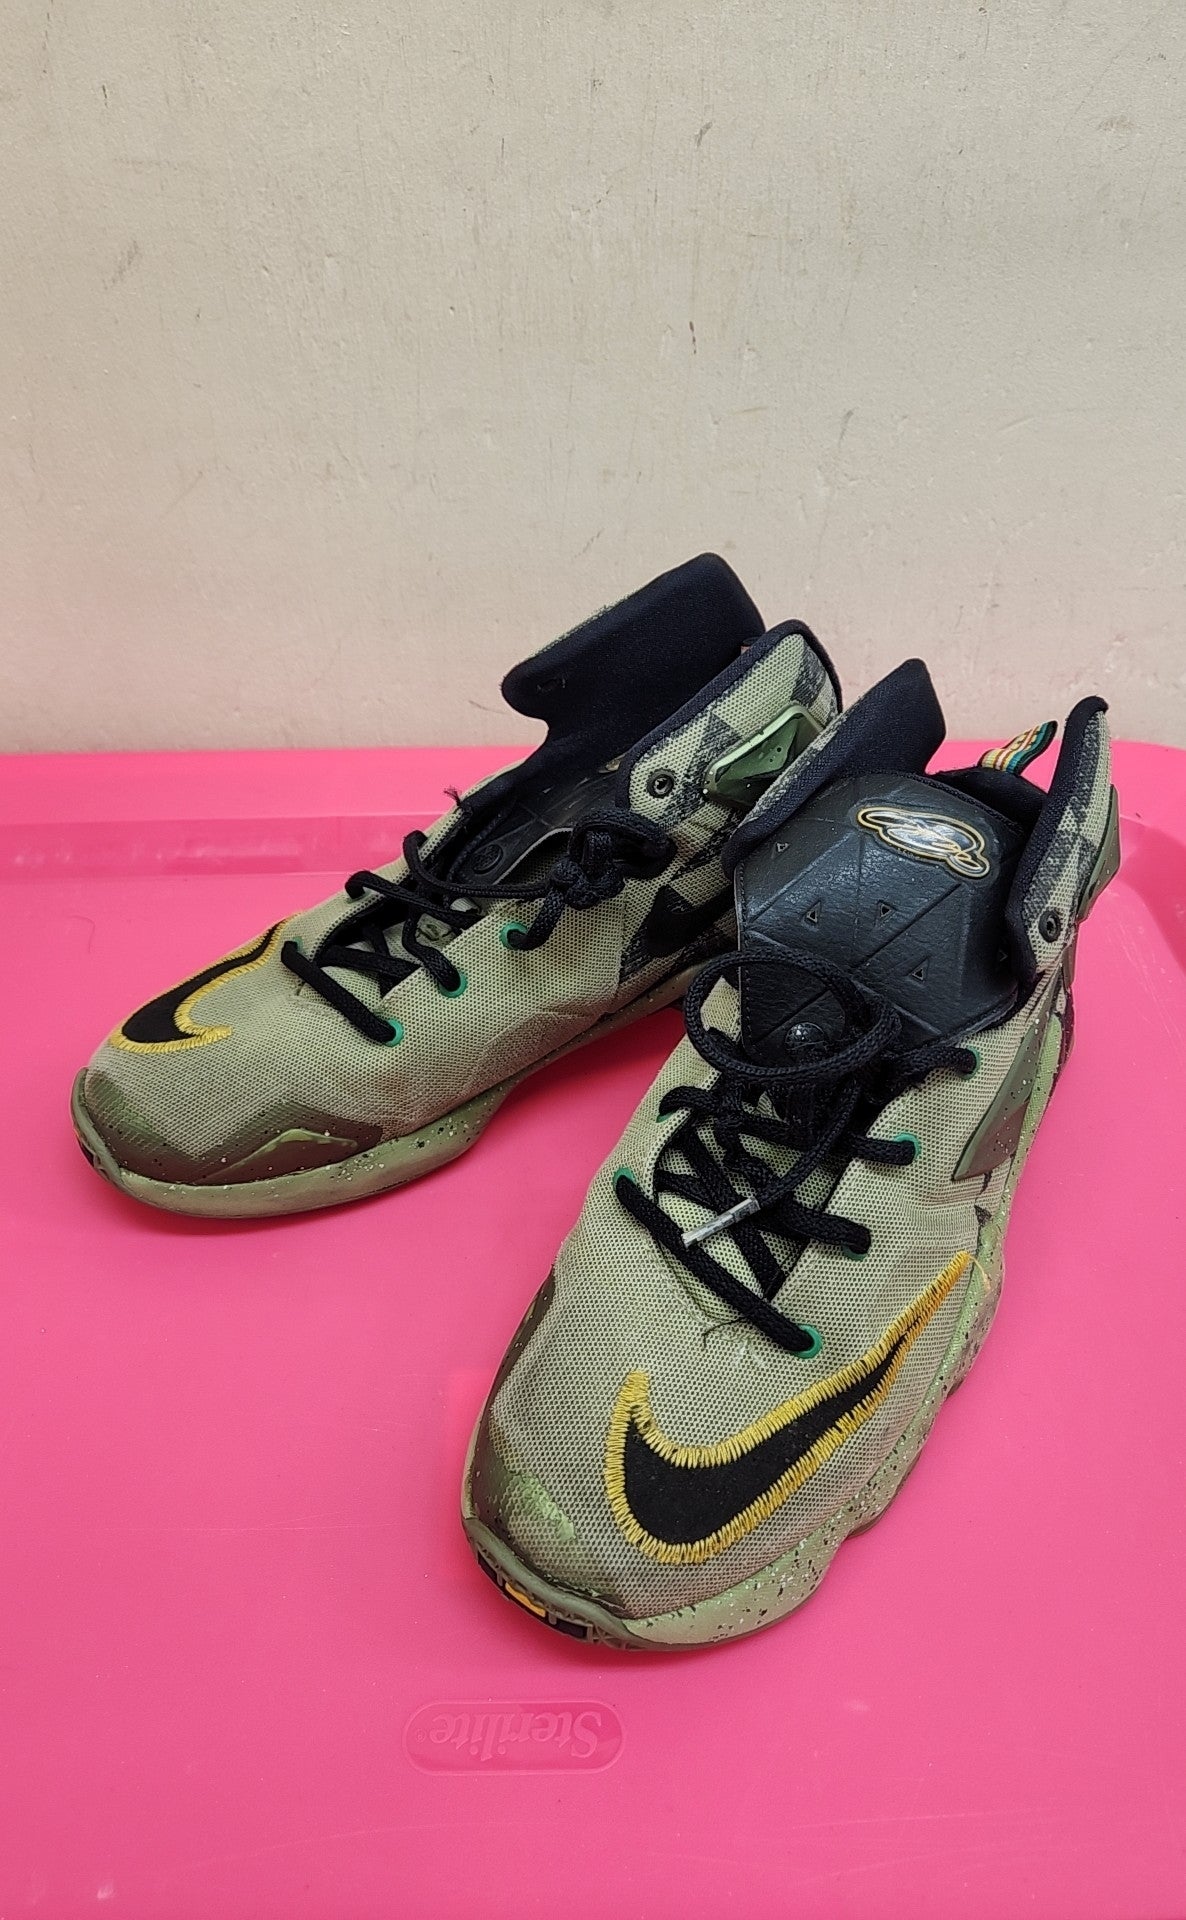 Nike Boy's Size 6-1/2 Green Sneakers